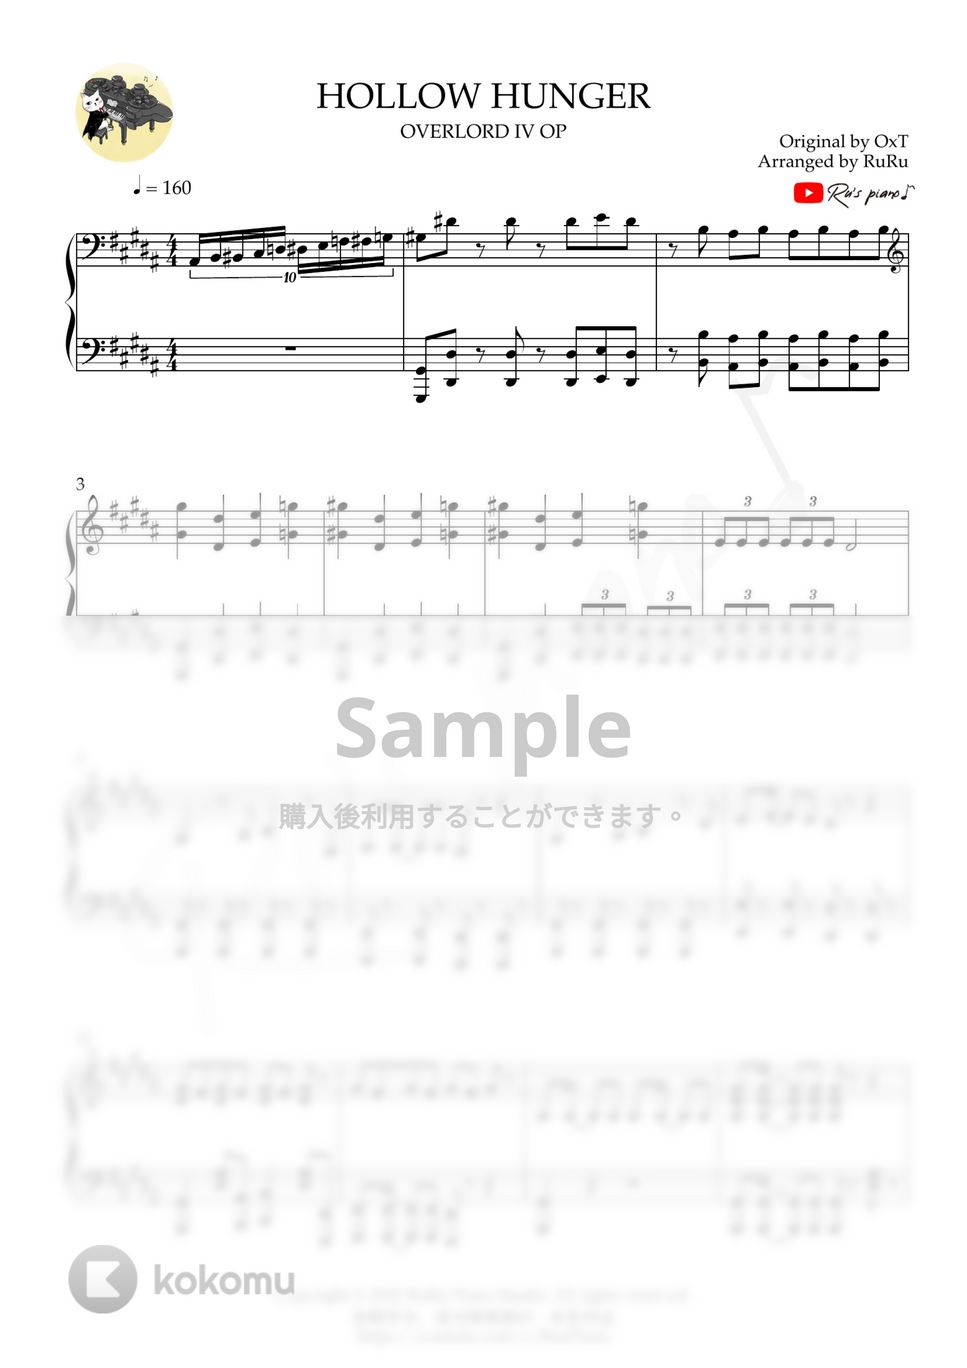 オーバーロード Overlord IV OP - HOLLOW HUNGER (1’30’’ ver.) by Ru's Piano